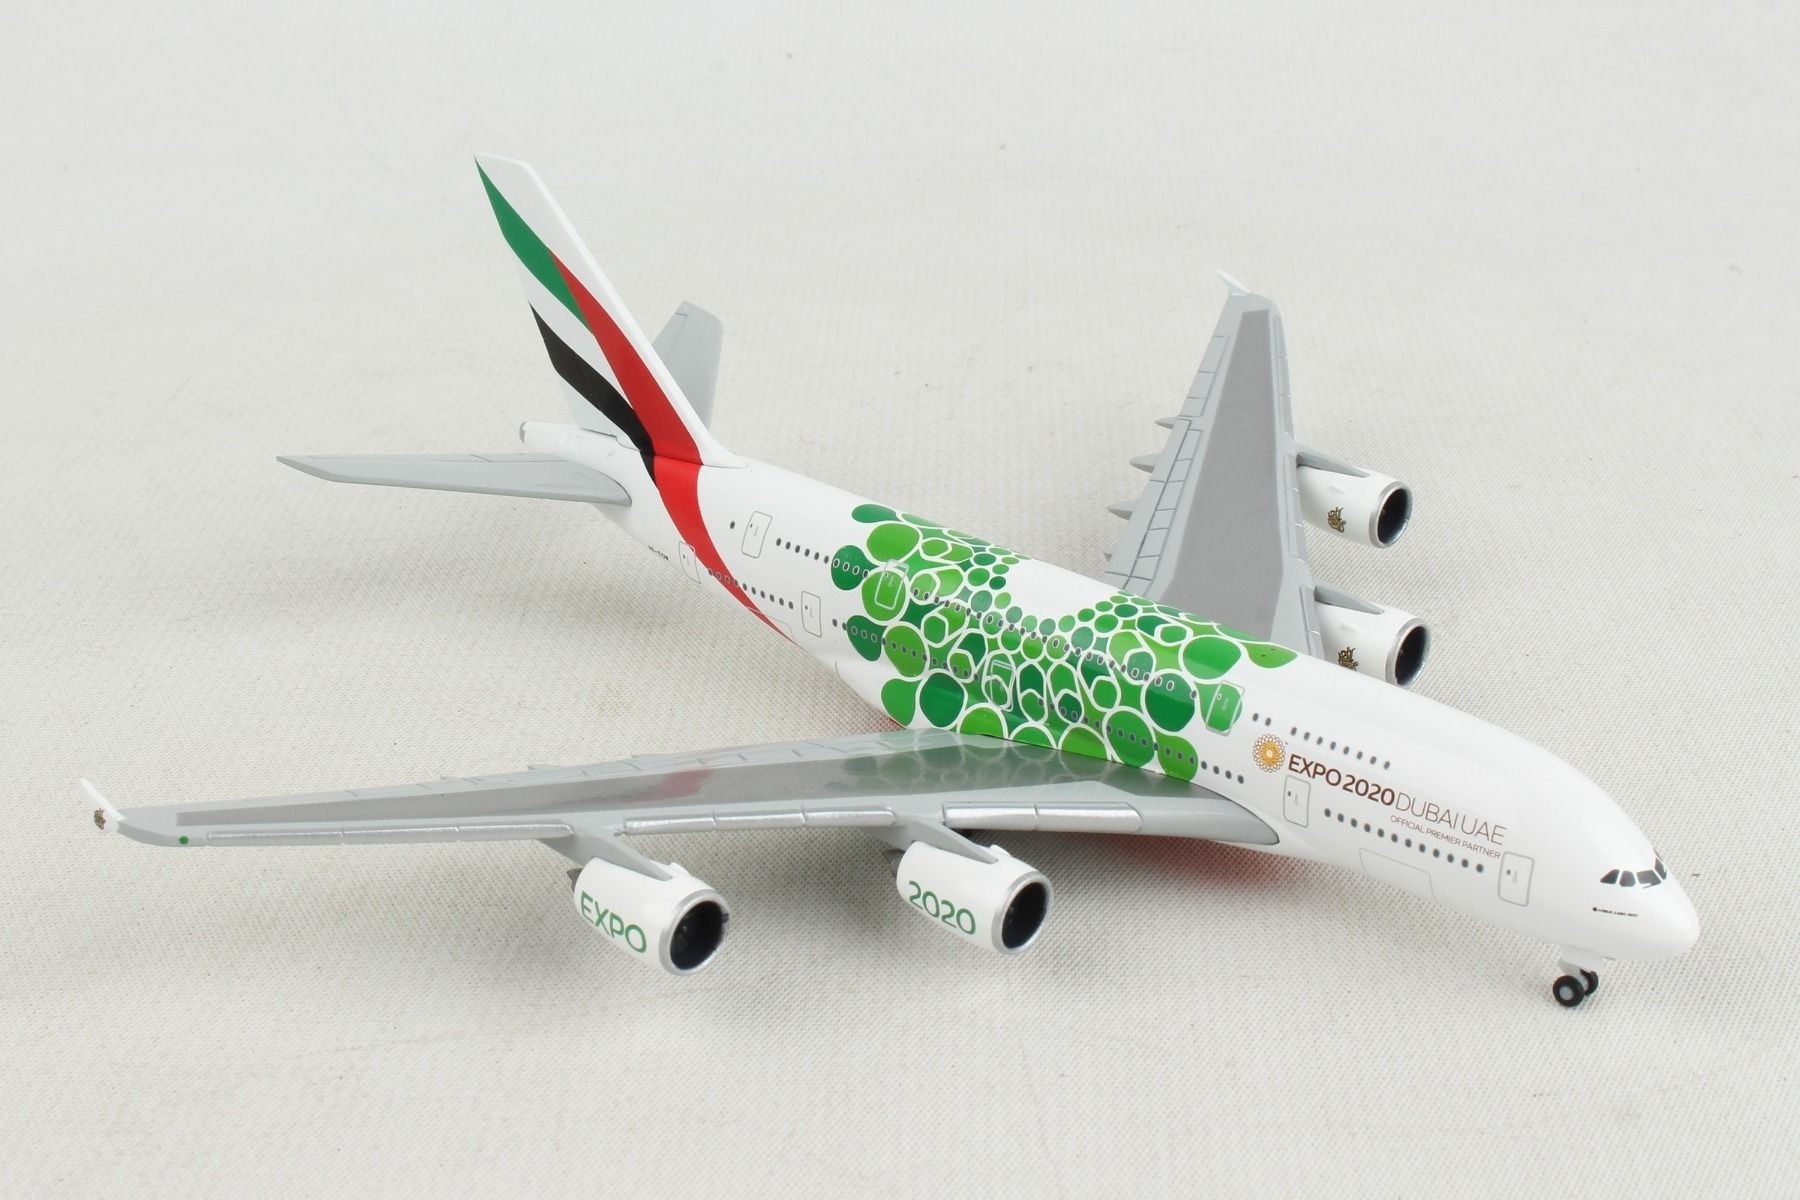 Mehrfarbig Herpa 533713 Dubai Expo Emirates Airbus A380-Expo 2020 Mobility Livery in Miniatur zum Basteln Sammeln und als Geschenk